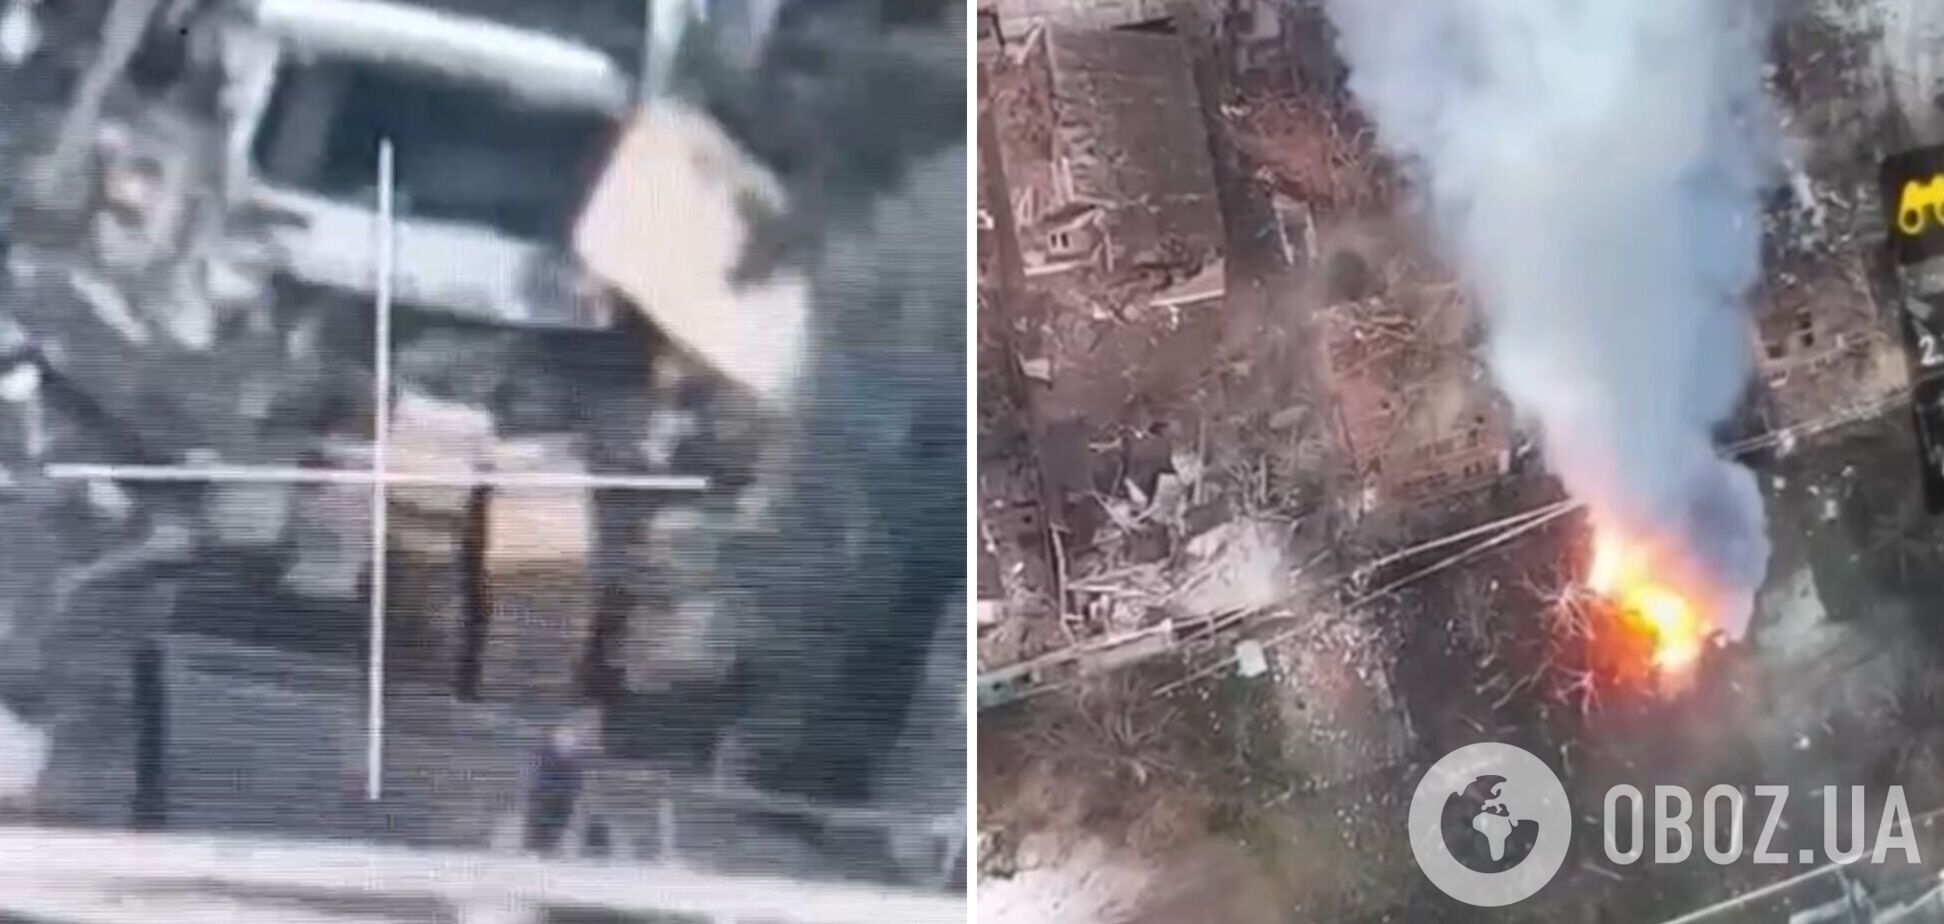 Четвертий за сьогодні: українські військові показали, як знищили склад боєприпасів окупантів у Соледарі. Відео